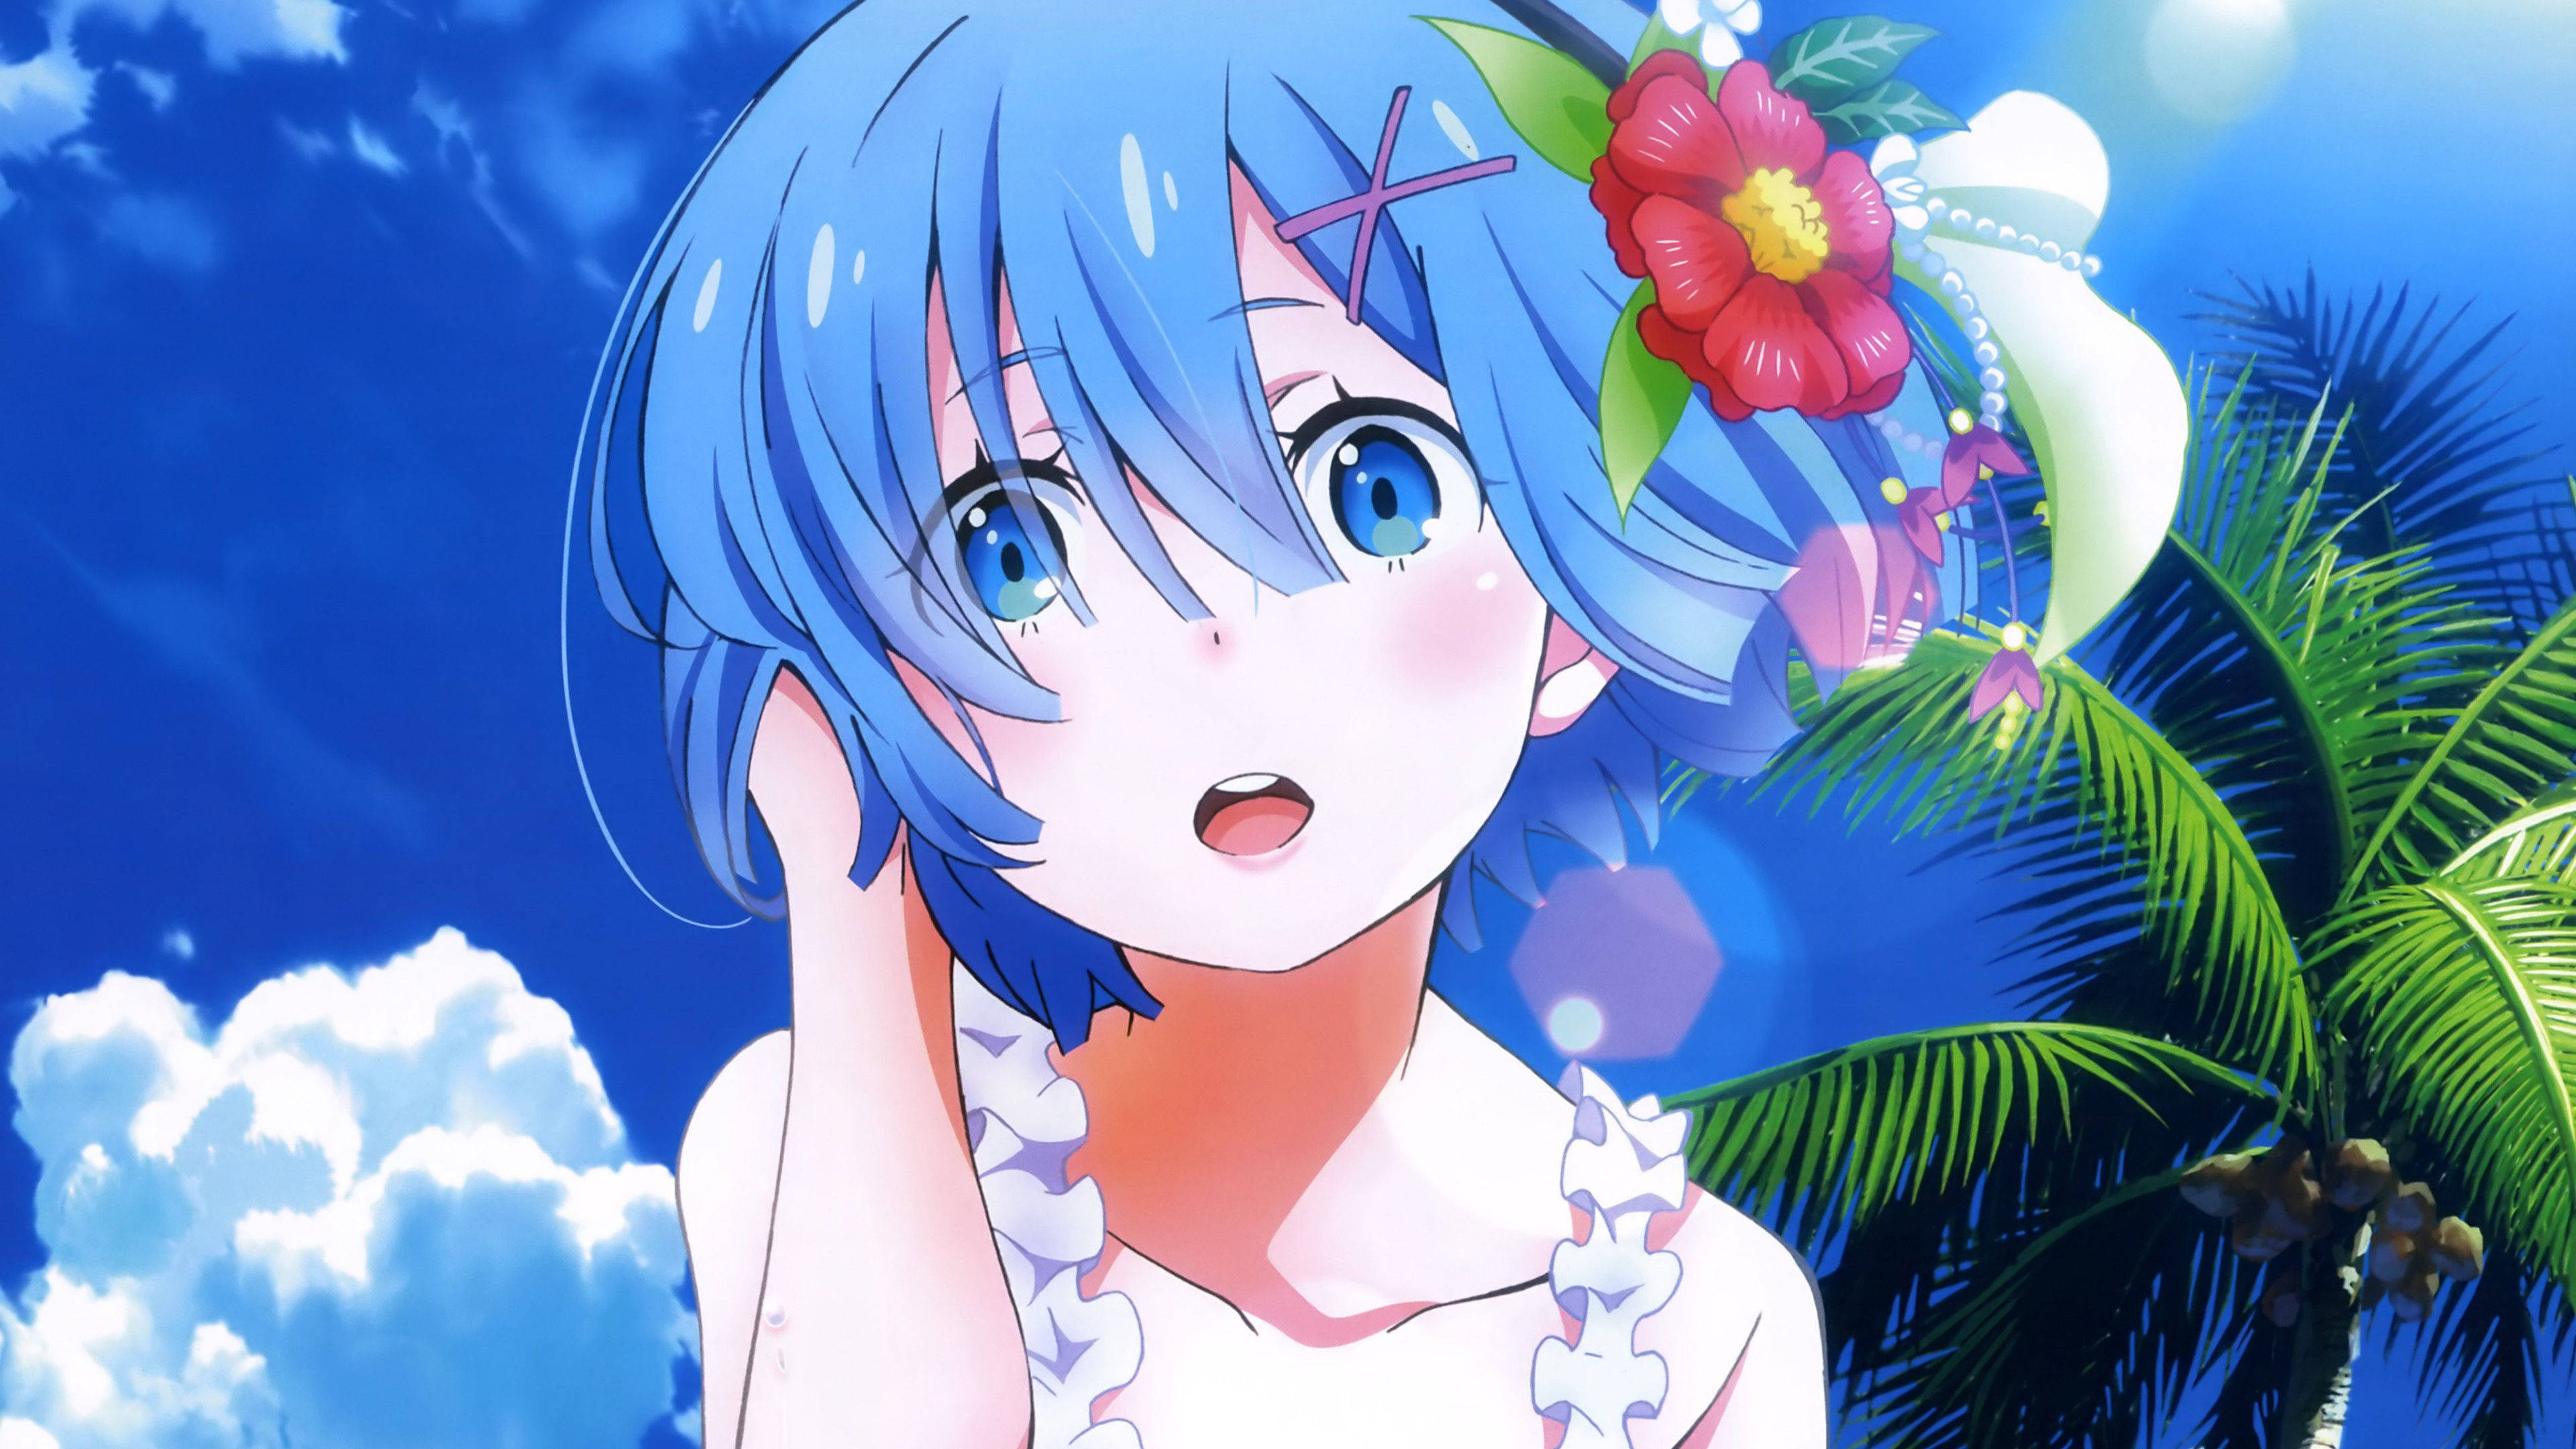 Download 4k Anime Girl Wallpaper 